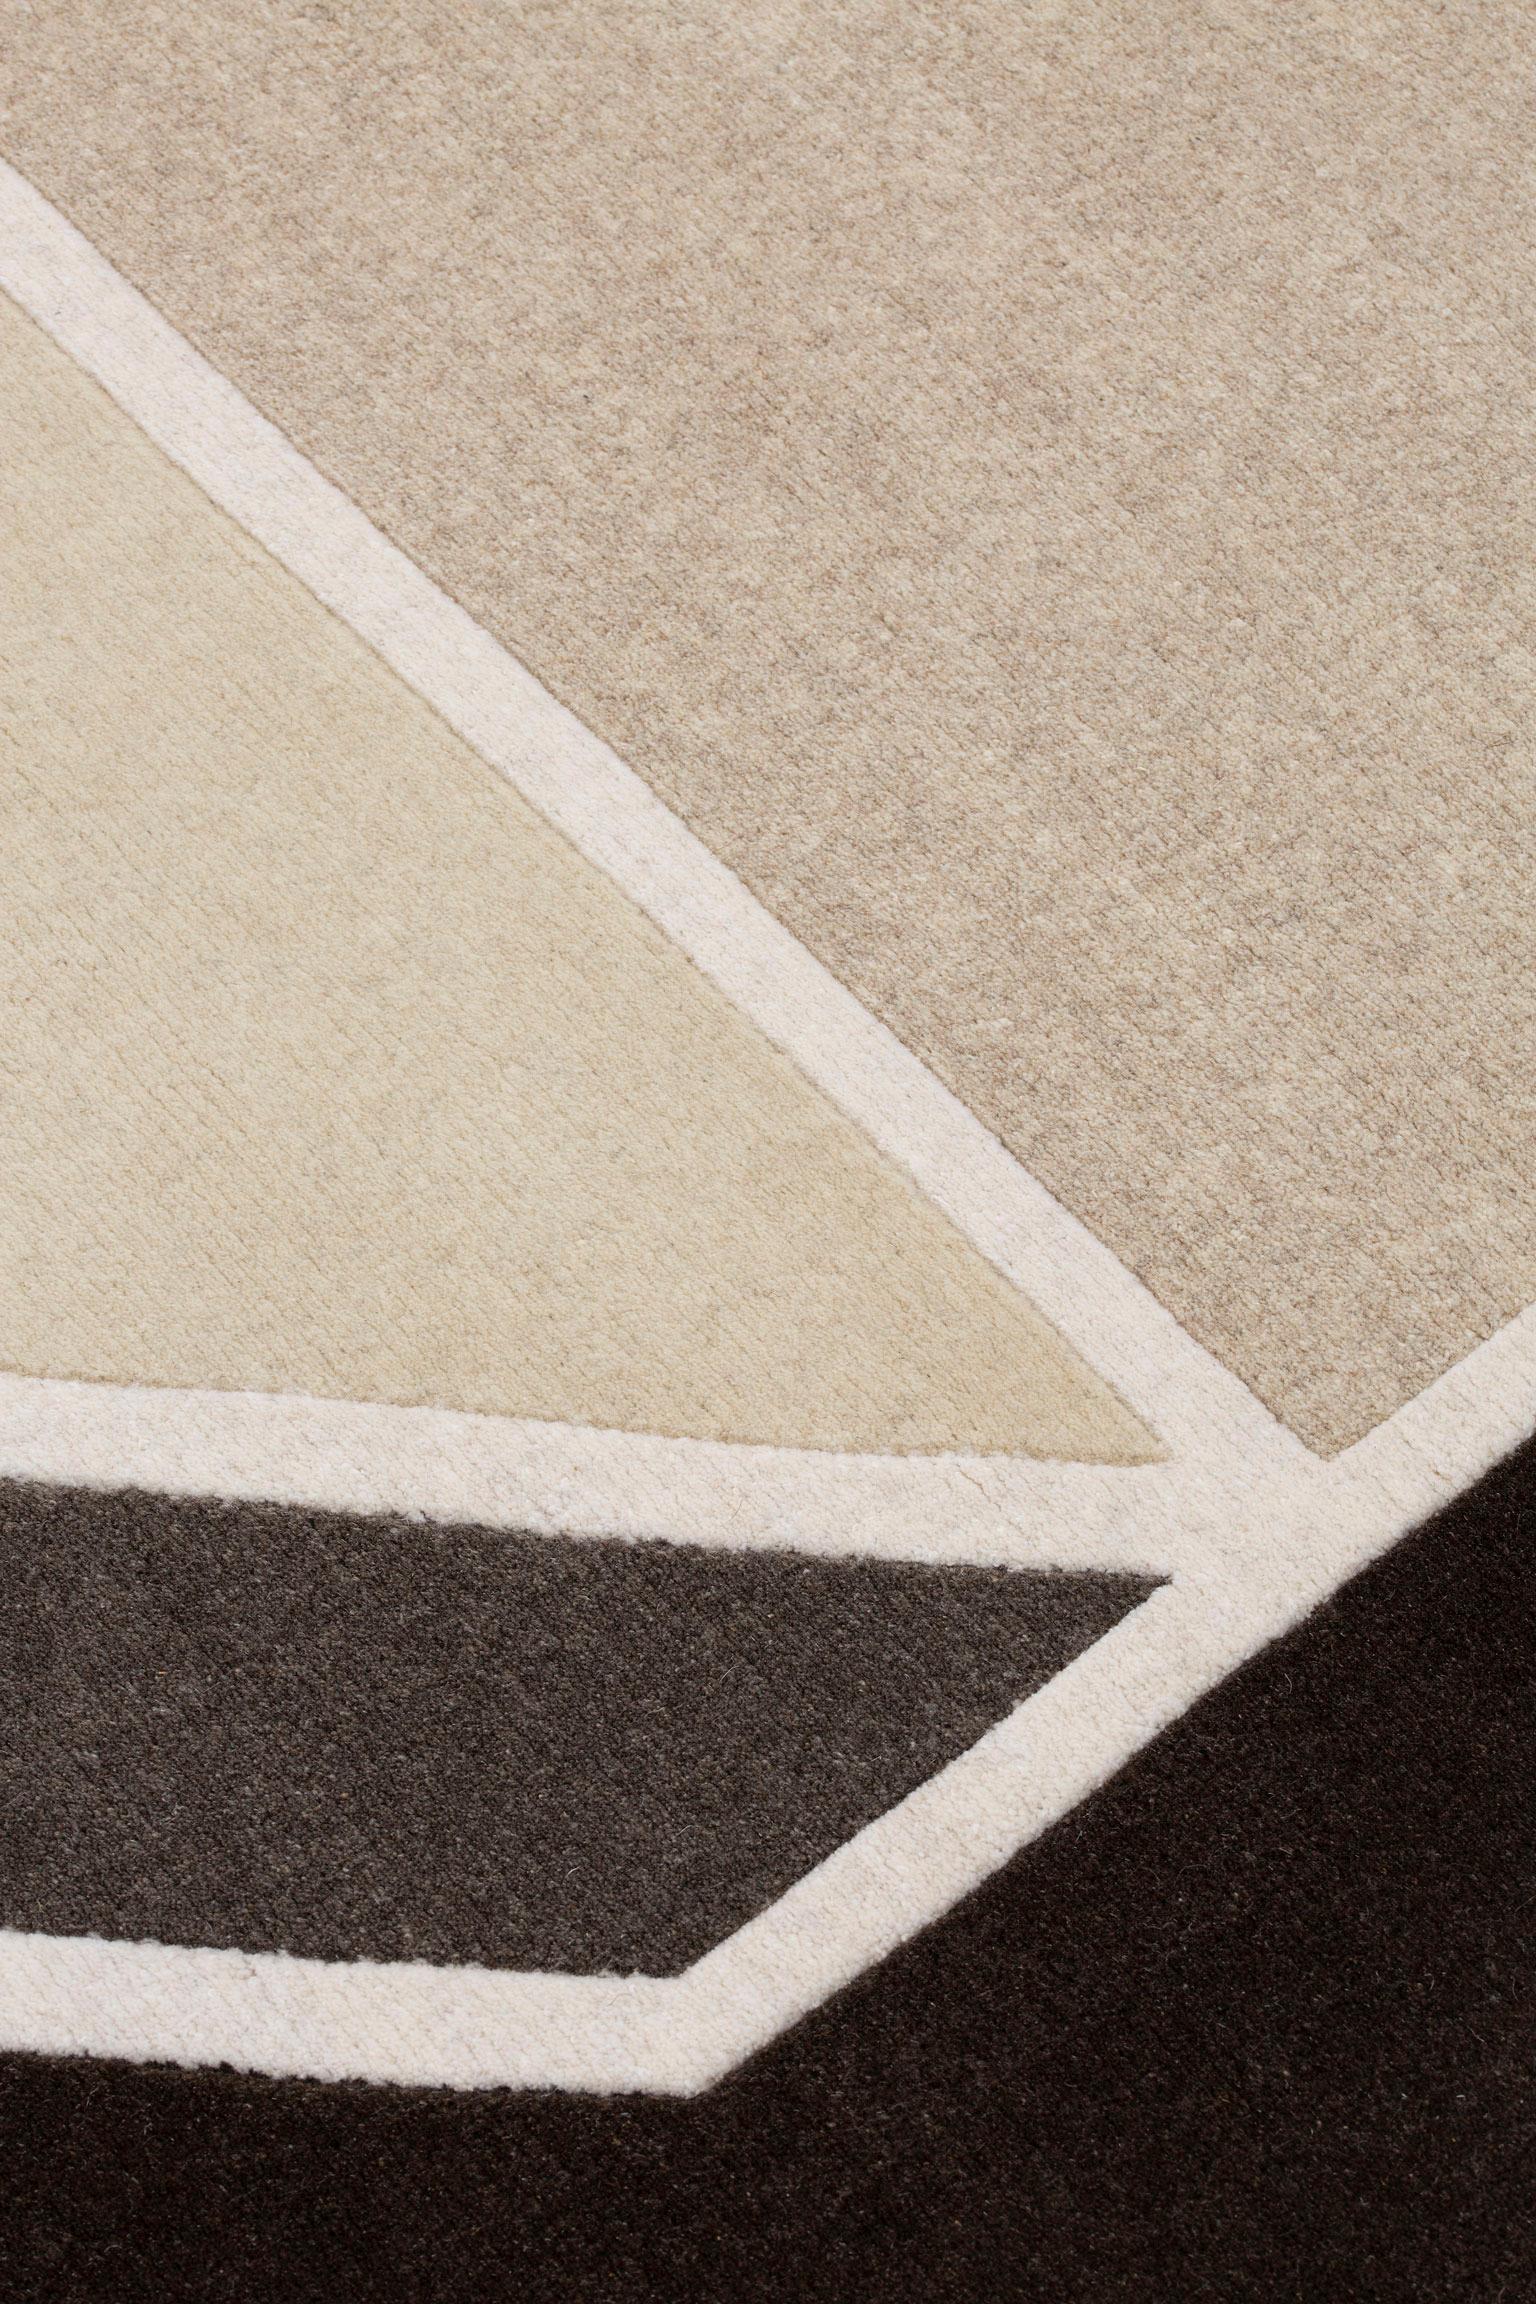 cc-tapis-Symbole werden in einer völlig ungetrübten Stimmung präsentiert. 
Sie bringen eine natürliche Wärme in die avantgardistische Ästhetik der Marke, wobei jeder Teppich seine Einzigartigkeit durch seine natürliche Farbe zum Ausdruck bringt.